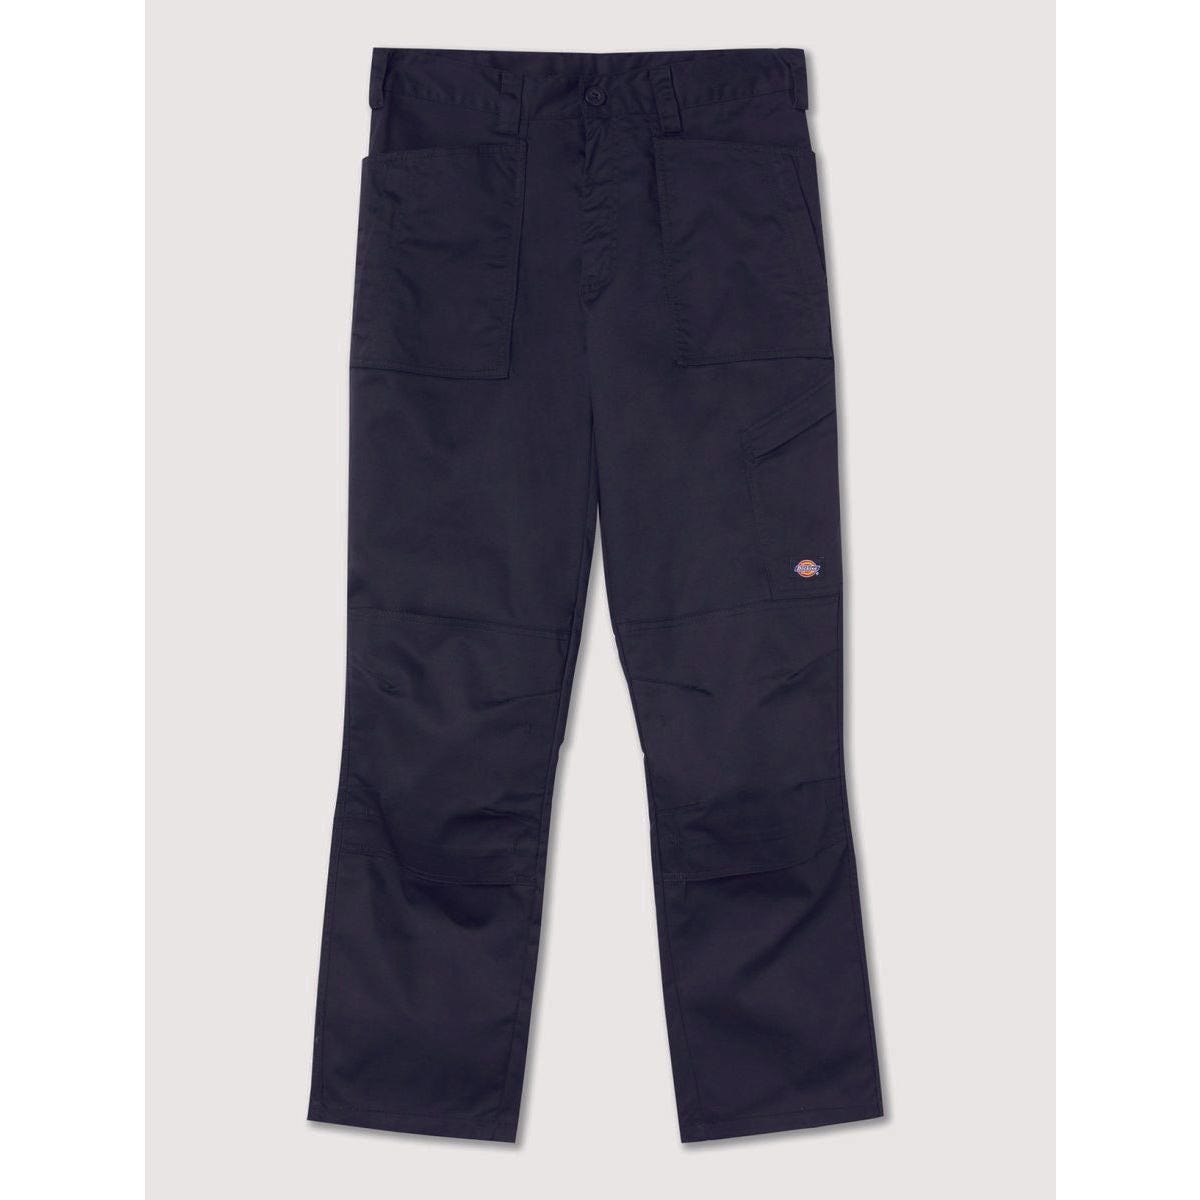 Pantalon de travail Action Flex gris - Dickies - Taille 42 7